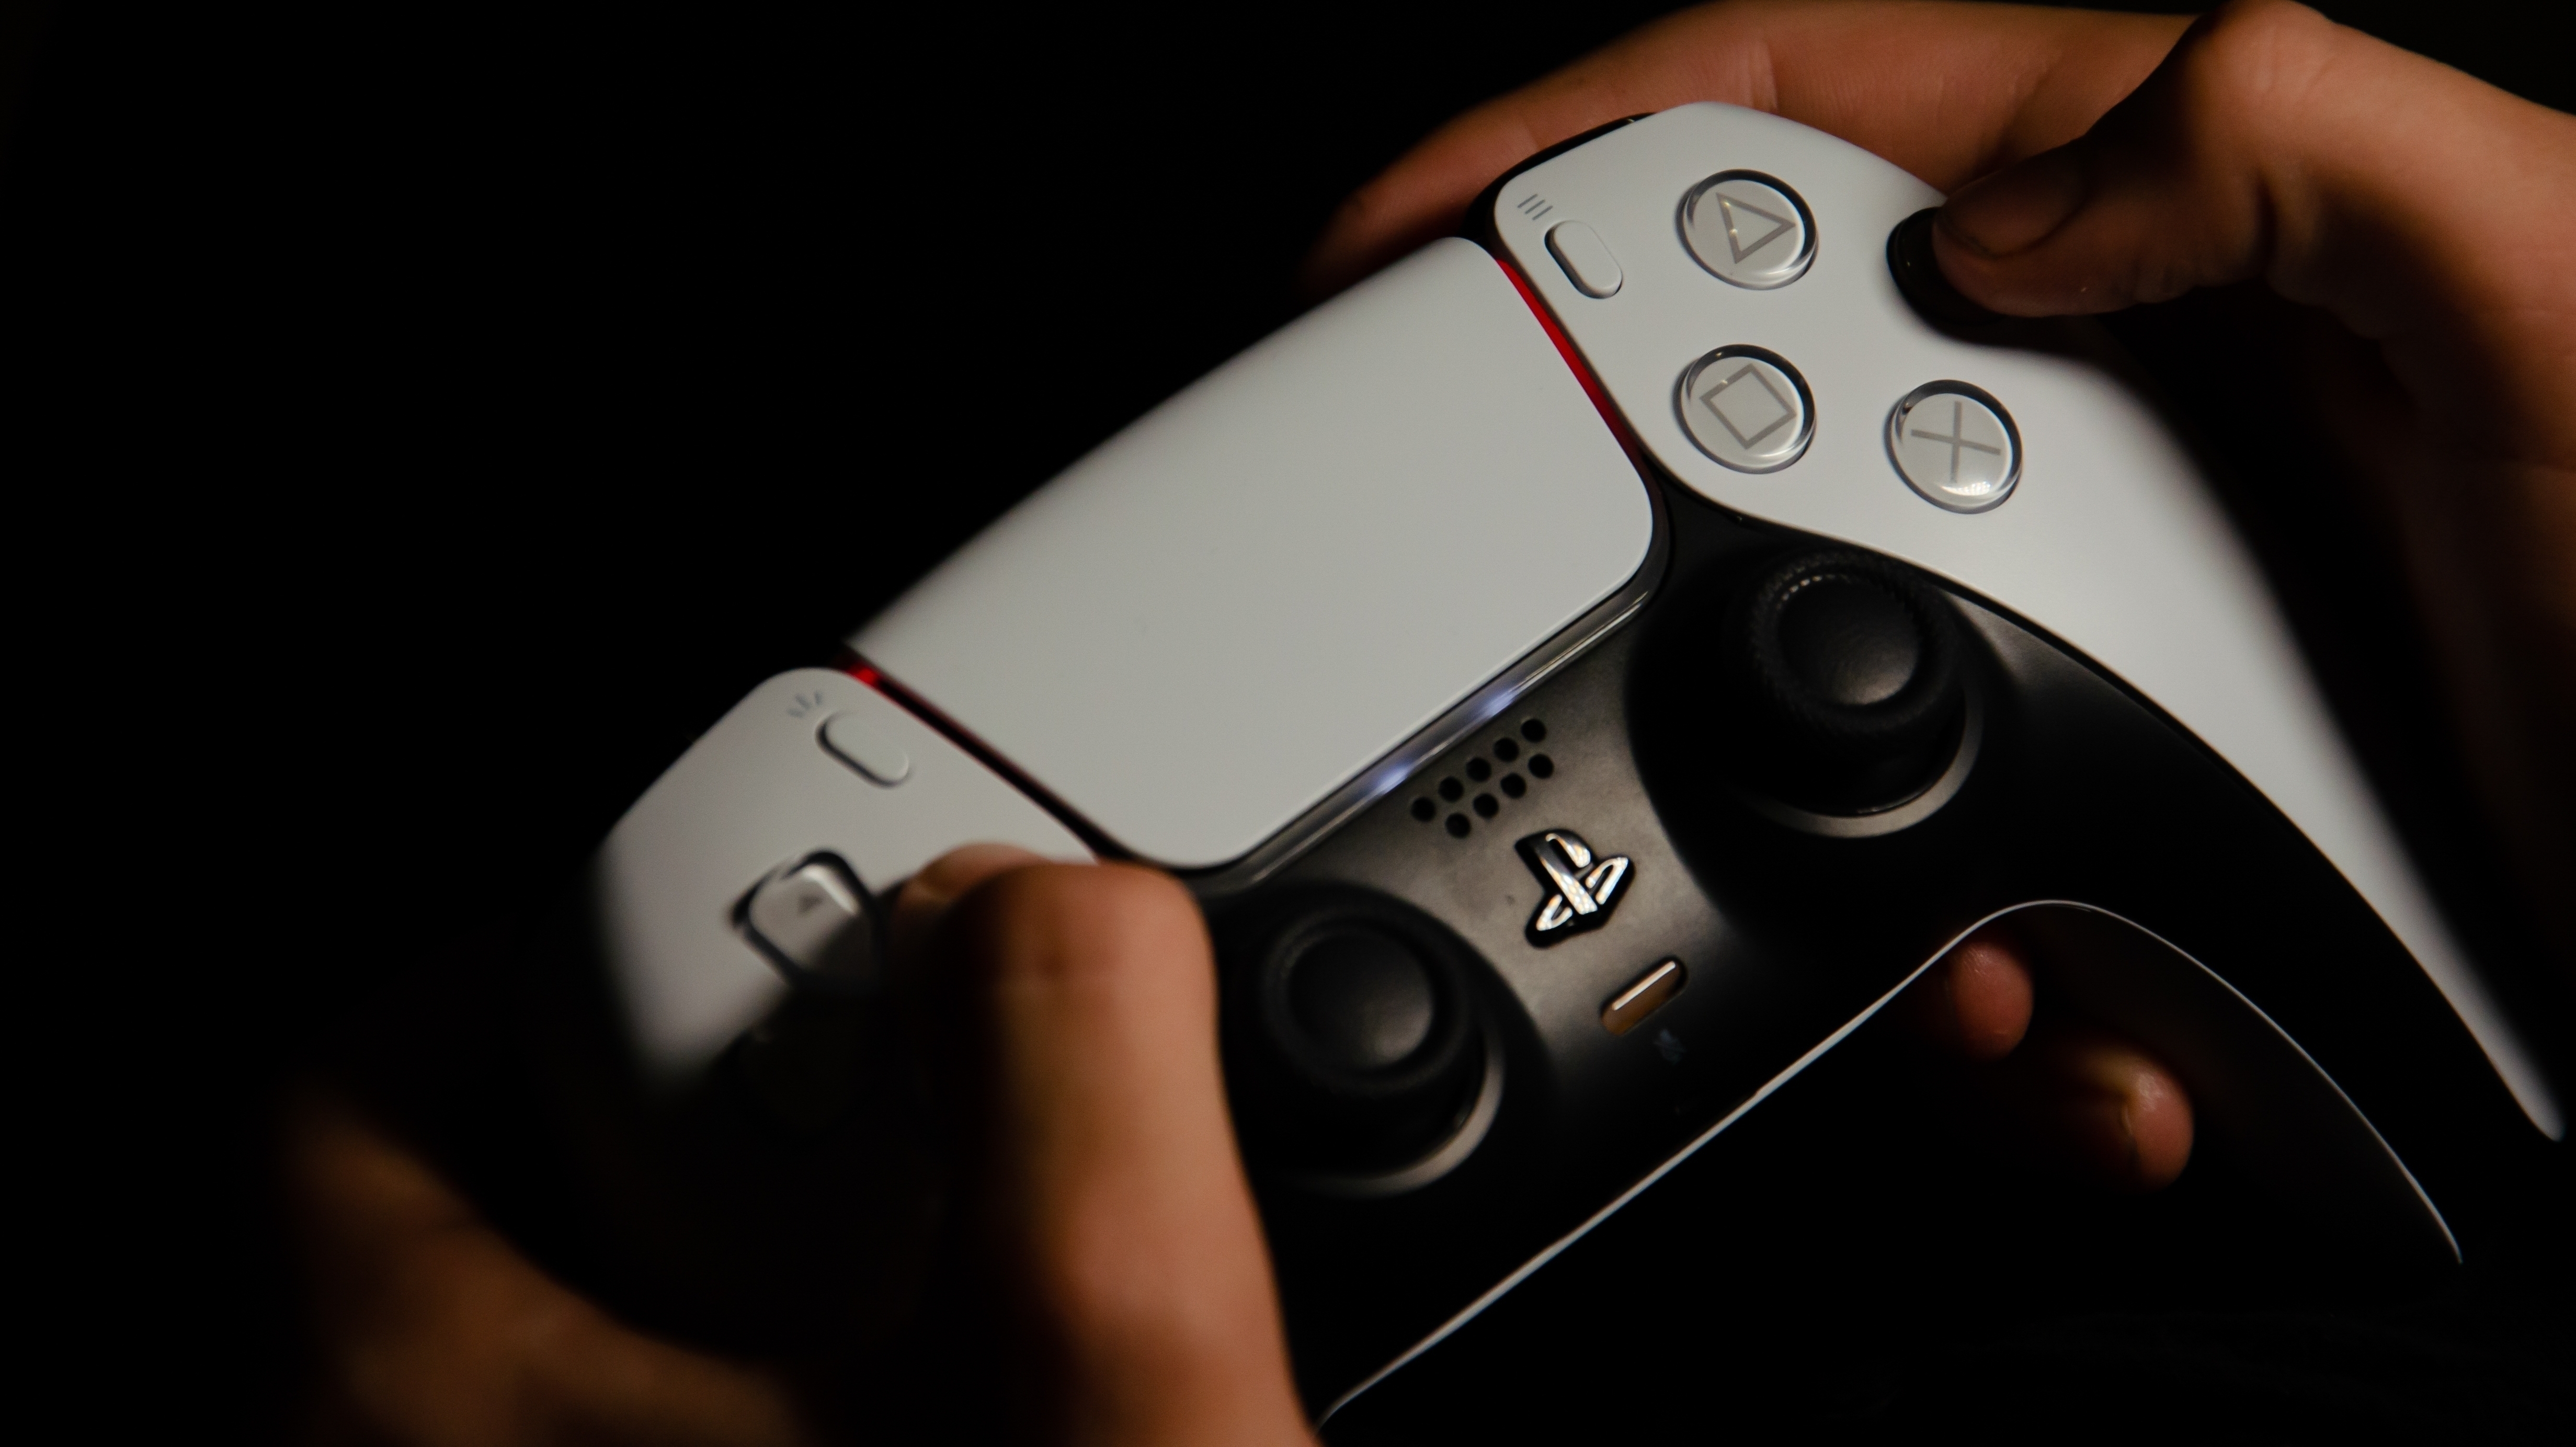 PS4-Controller am PC nutzen - so klappt's | heise online